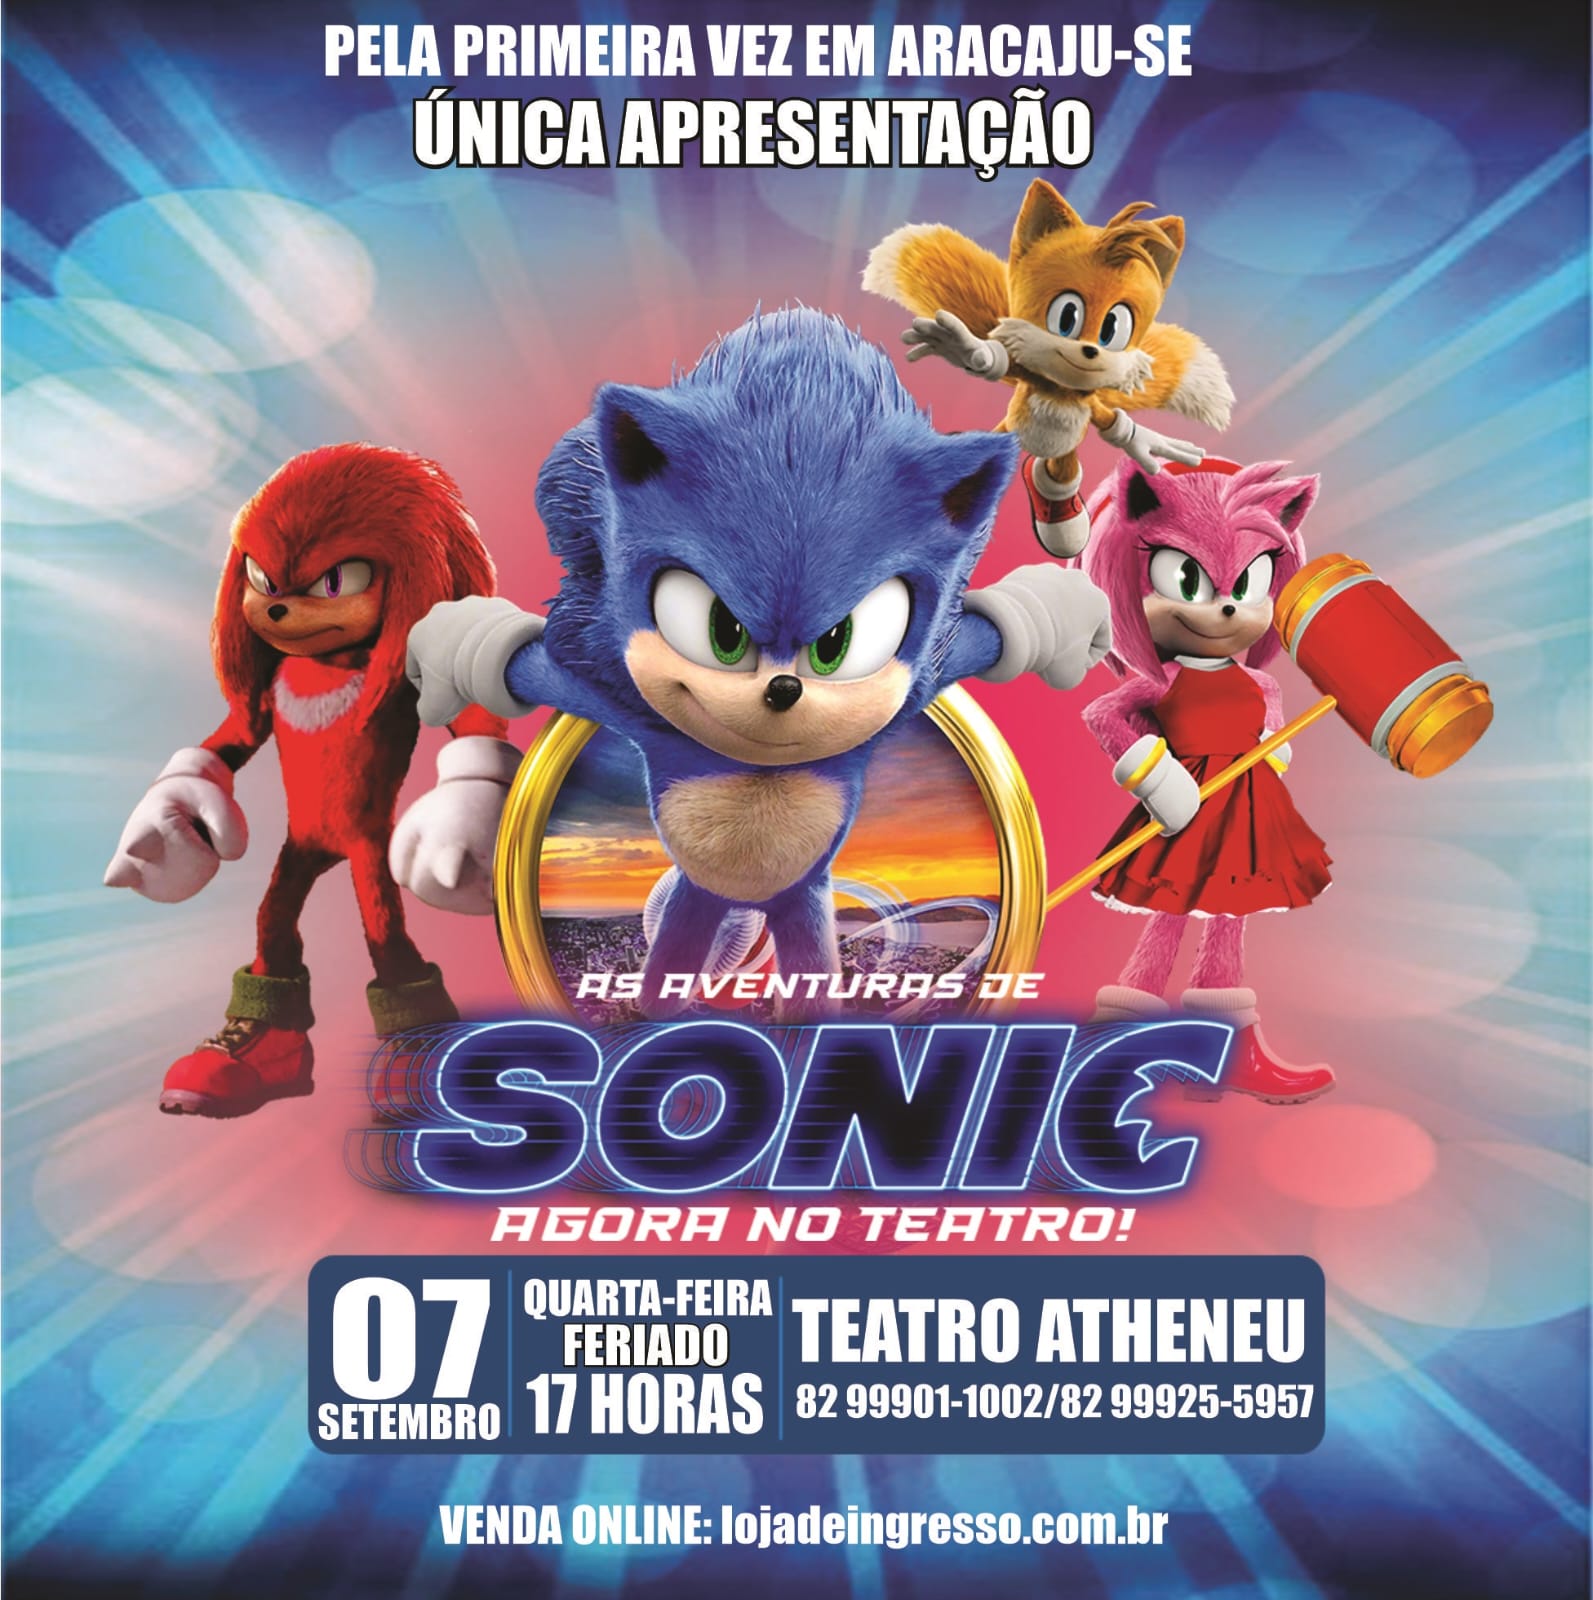 Atheneu recebe espetáculo do personagem Sonic - O que é notícia em Sergipe